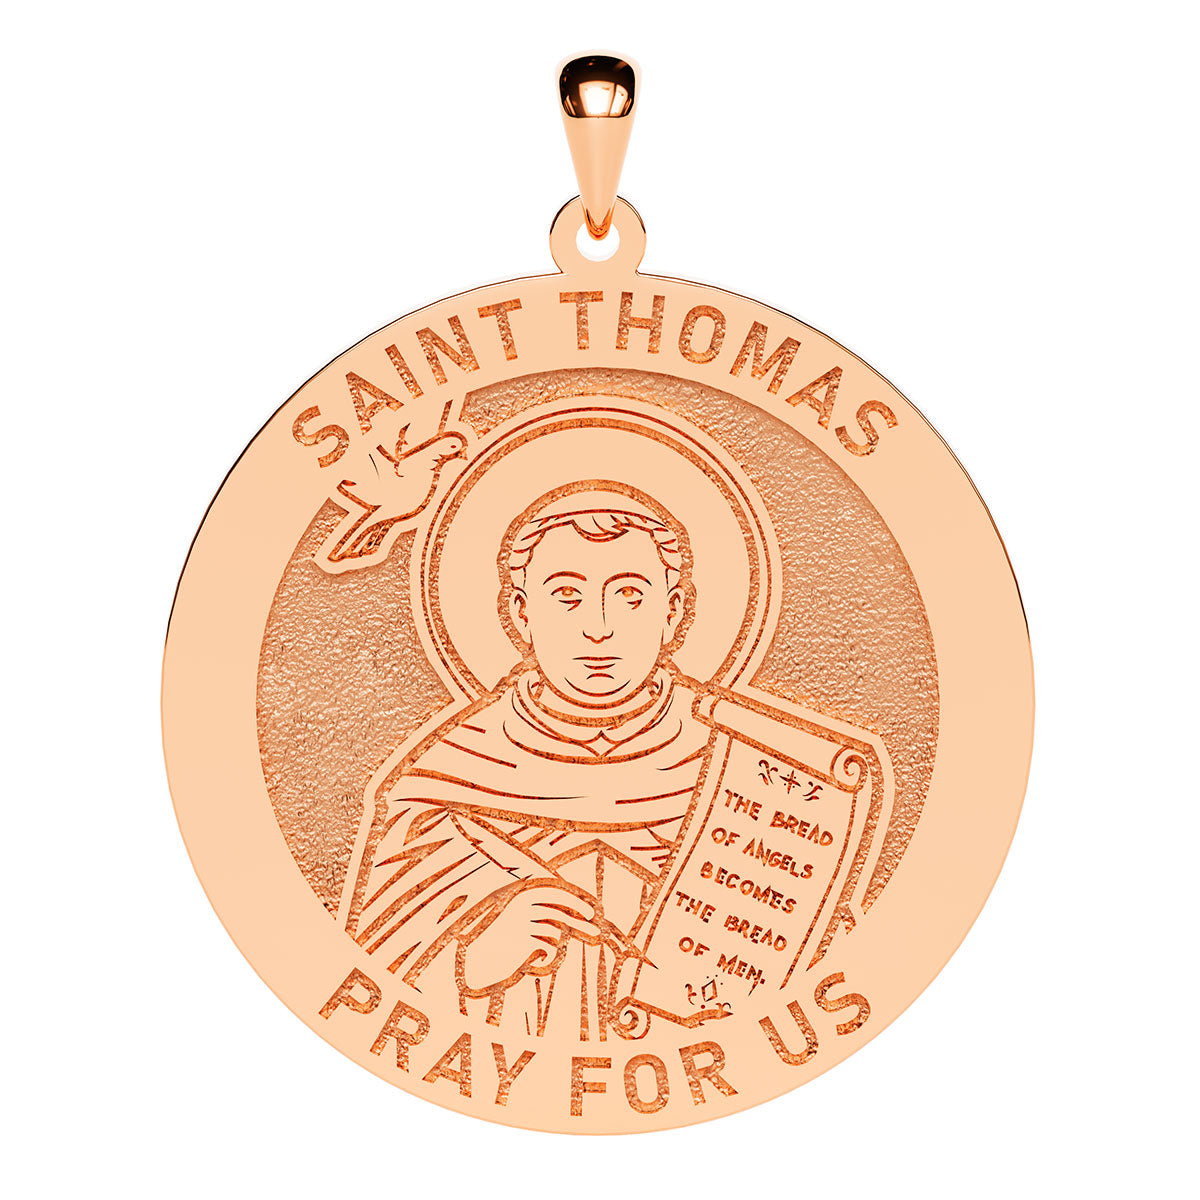 Saint Thomas Round Religious Medal